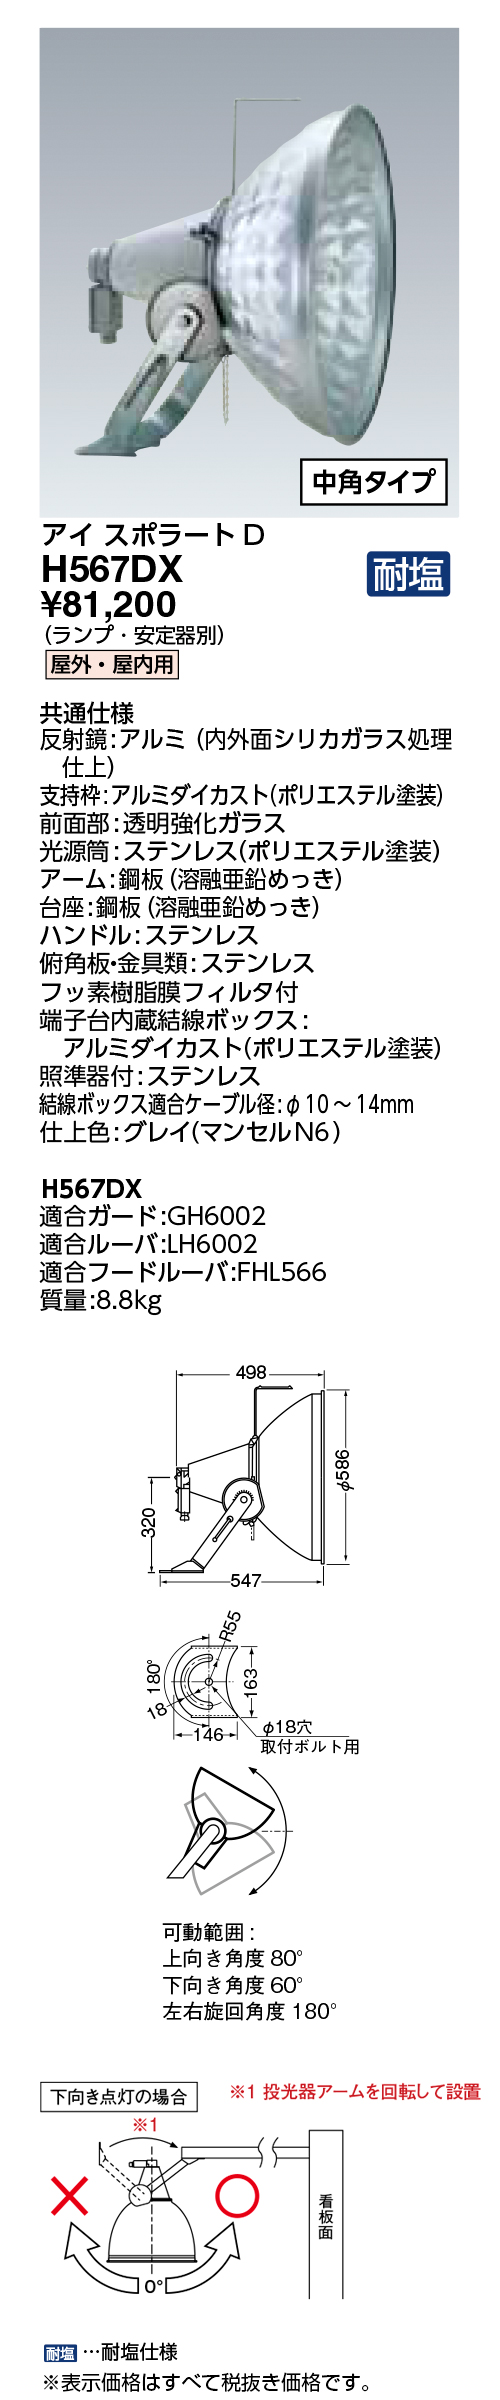 岩崎電気 HID投光器(普及形) H373D - 3